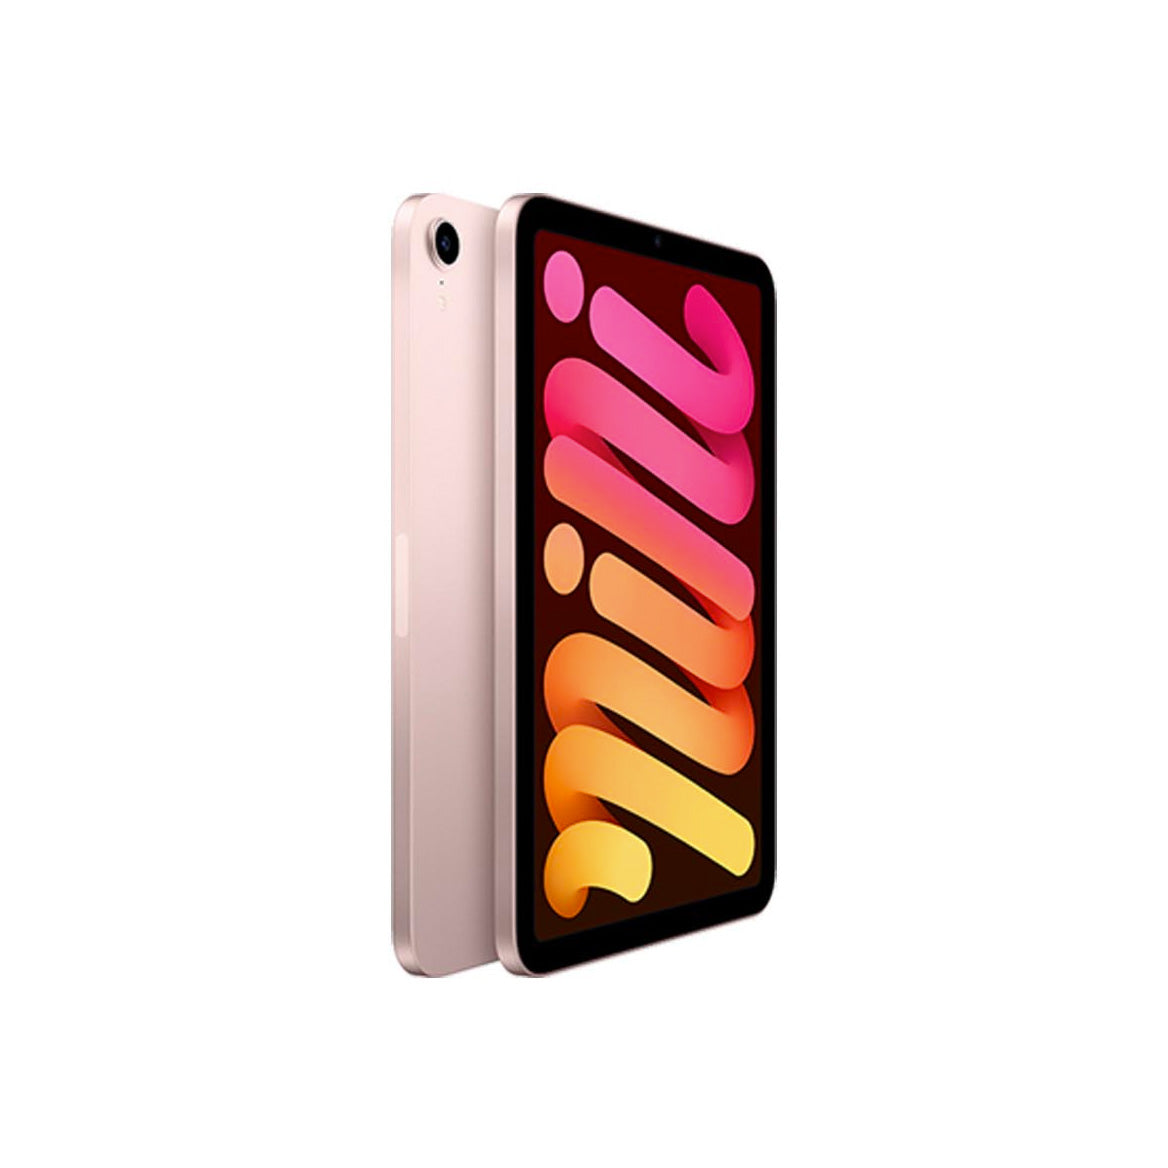 iPad mini Gen 6 pink side view